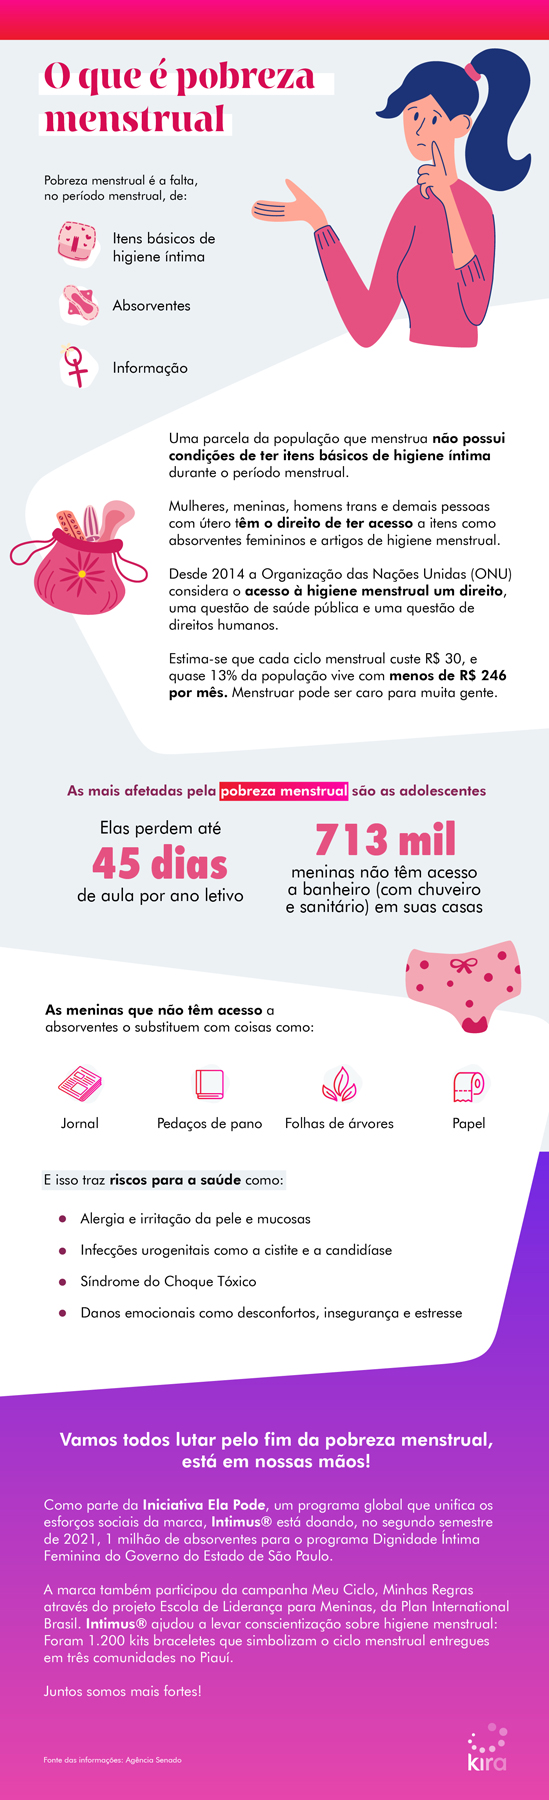 infográfico sobre pobreza menstrual